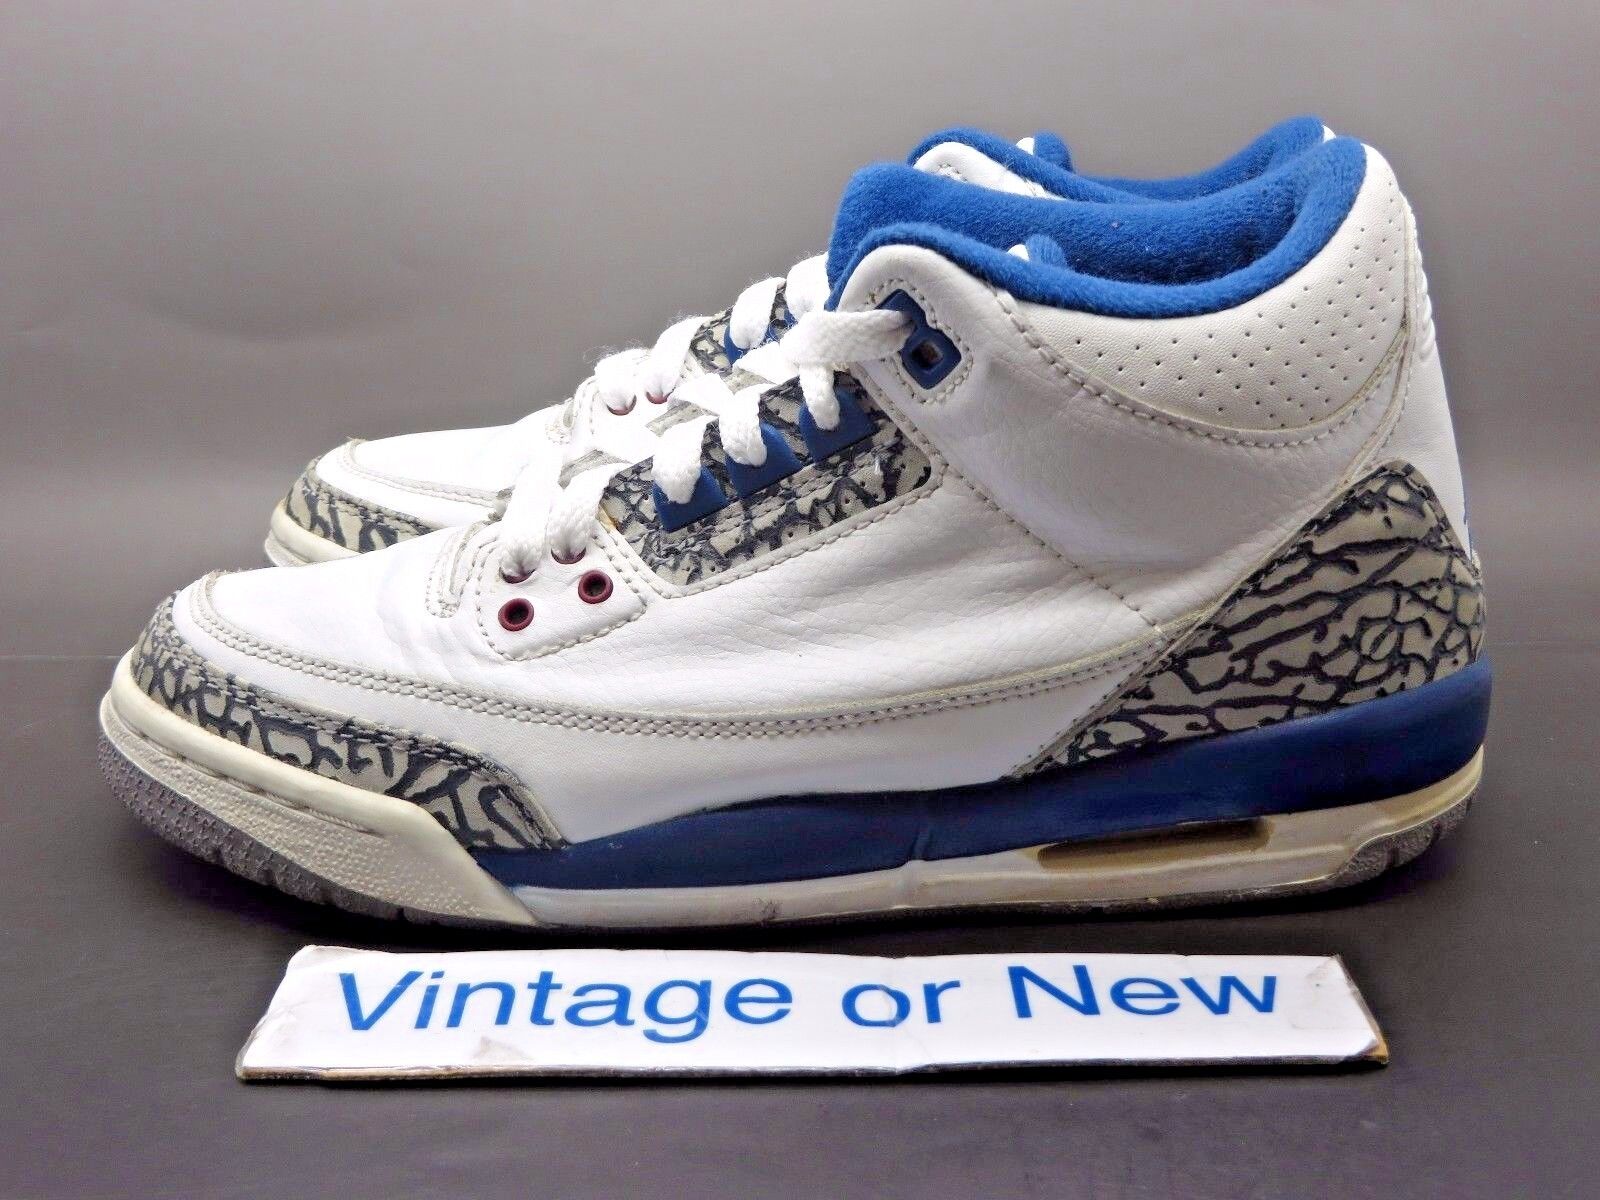 Nike Air Jordan III 3 True Blue Retro BG 2001 sz 5.5Y | eBay